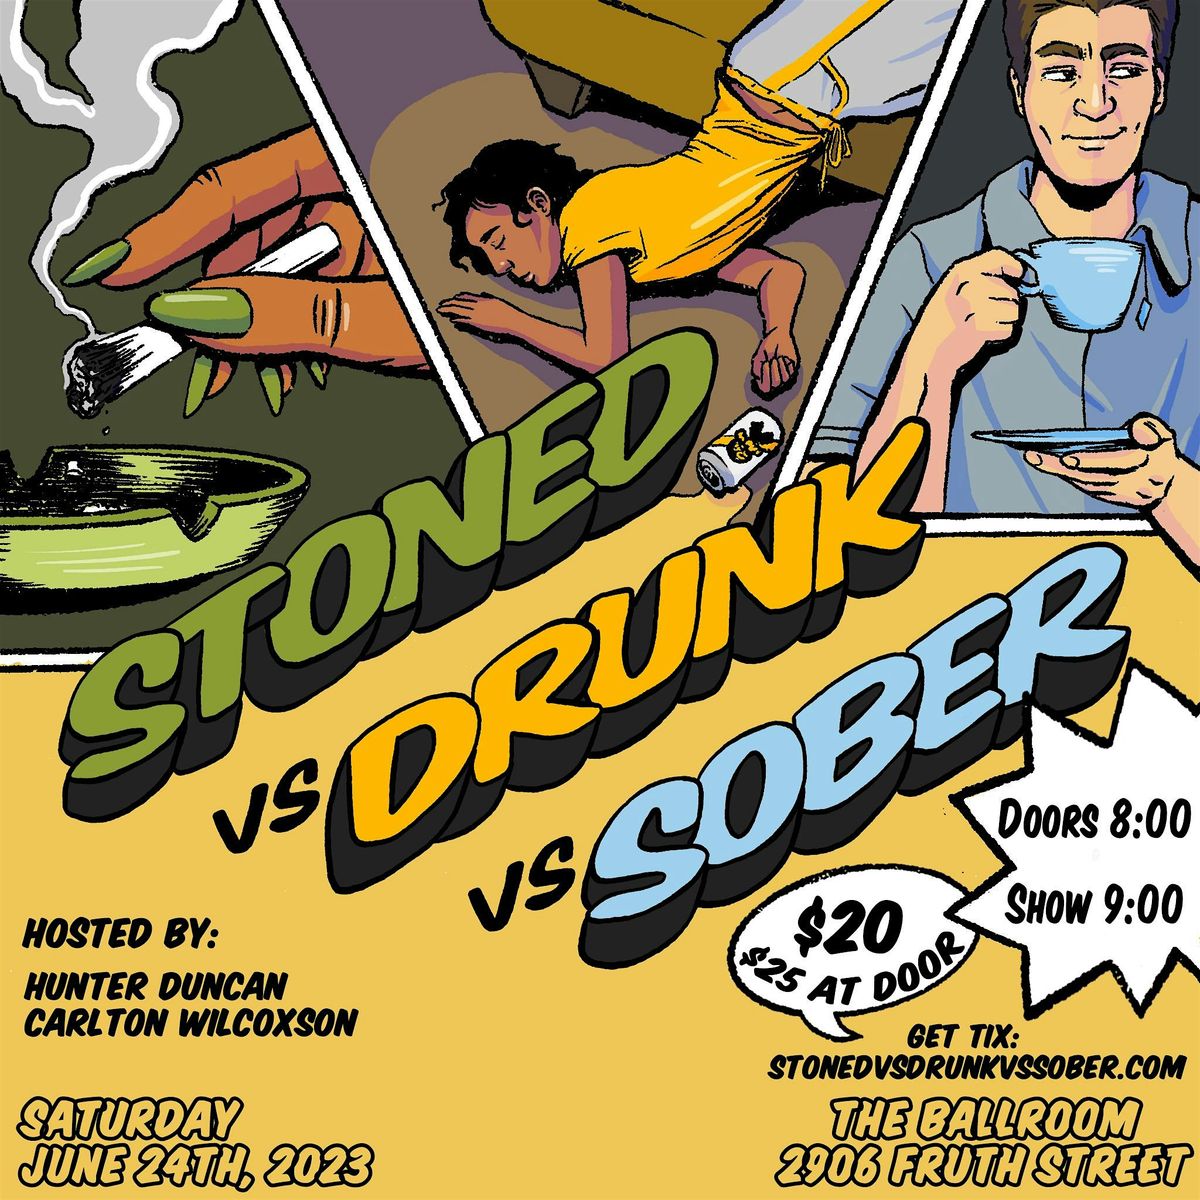 Stoned vs Drunk vs Sober: WILD NOVEMBER!